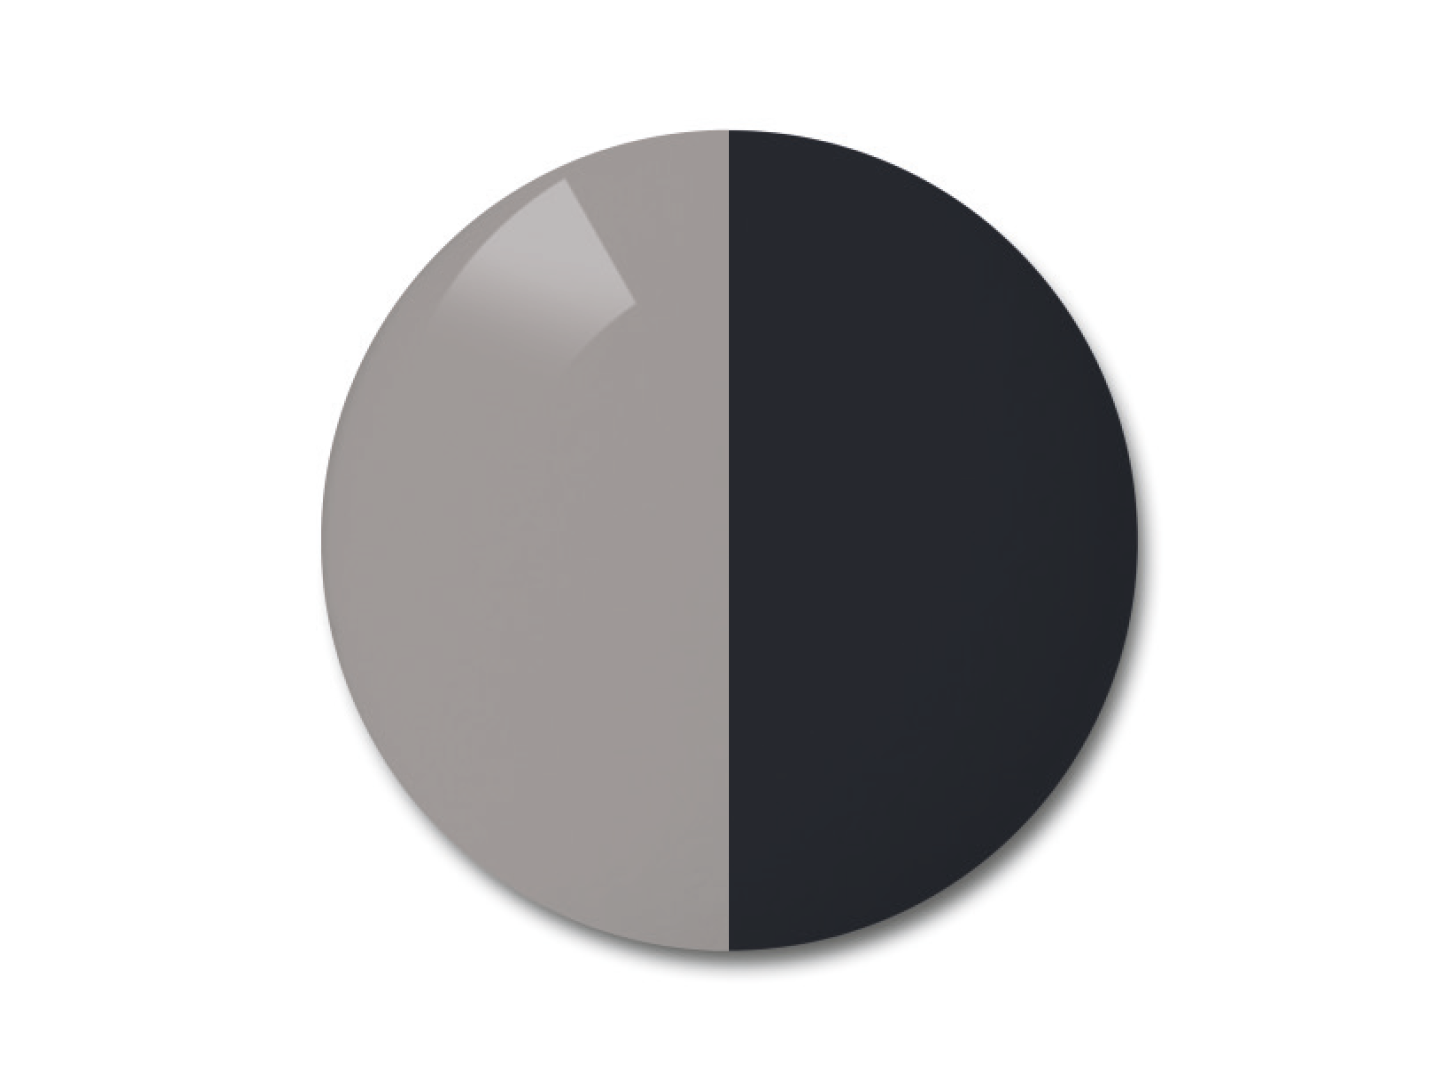 자이스 어댑티브선 변색 렌즈 중 단색 그레이 컬러를 보여주는 그림